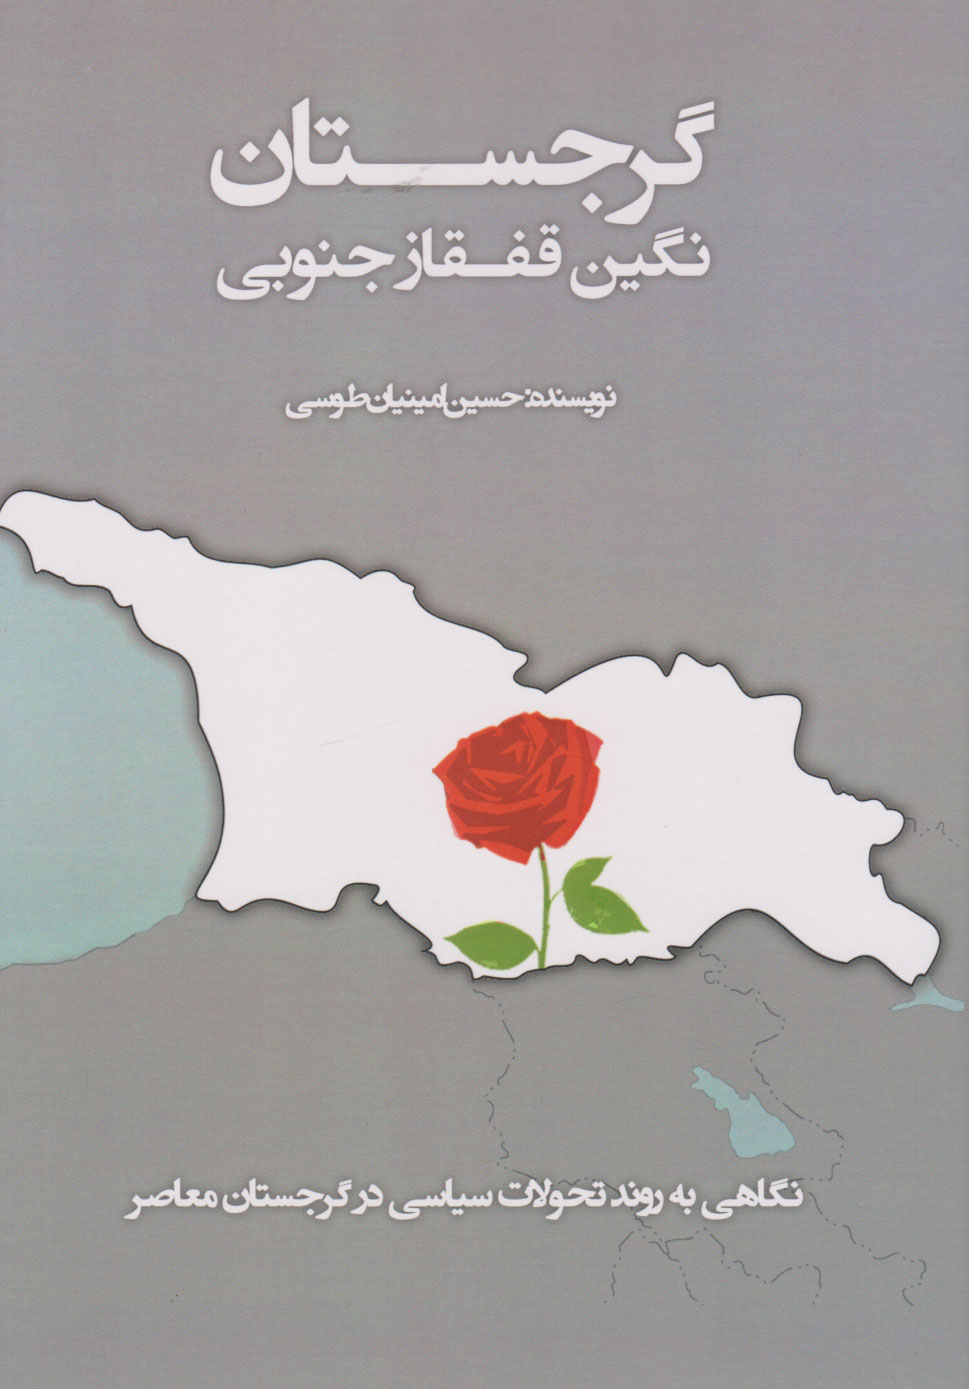  کتاب گرجستان (نگین قفقاز جنوبی)